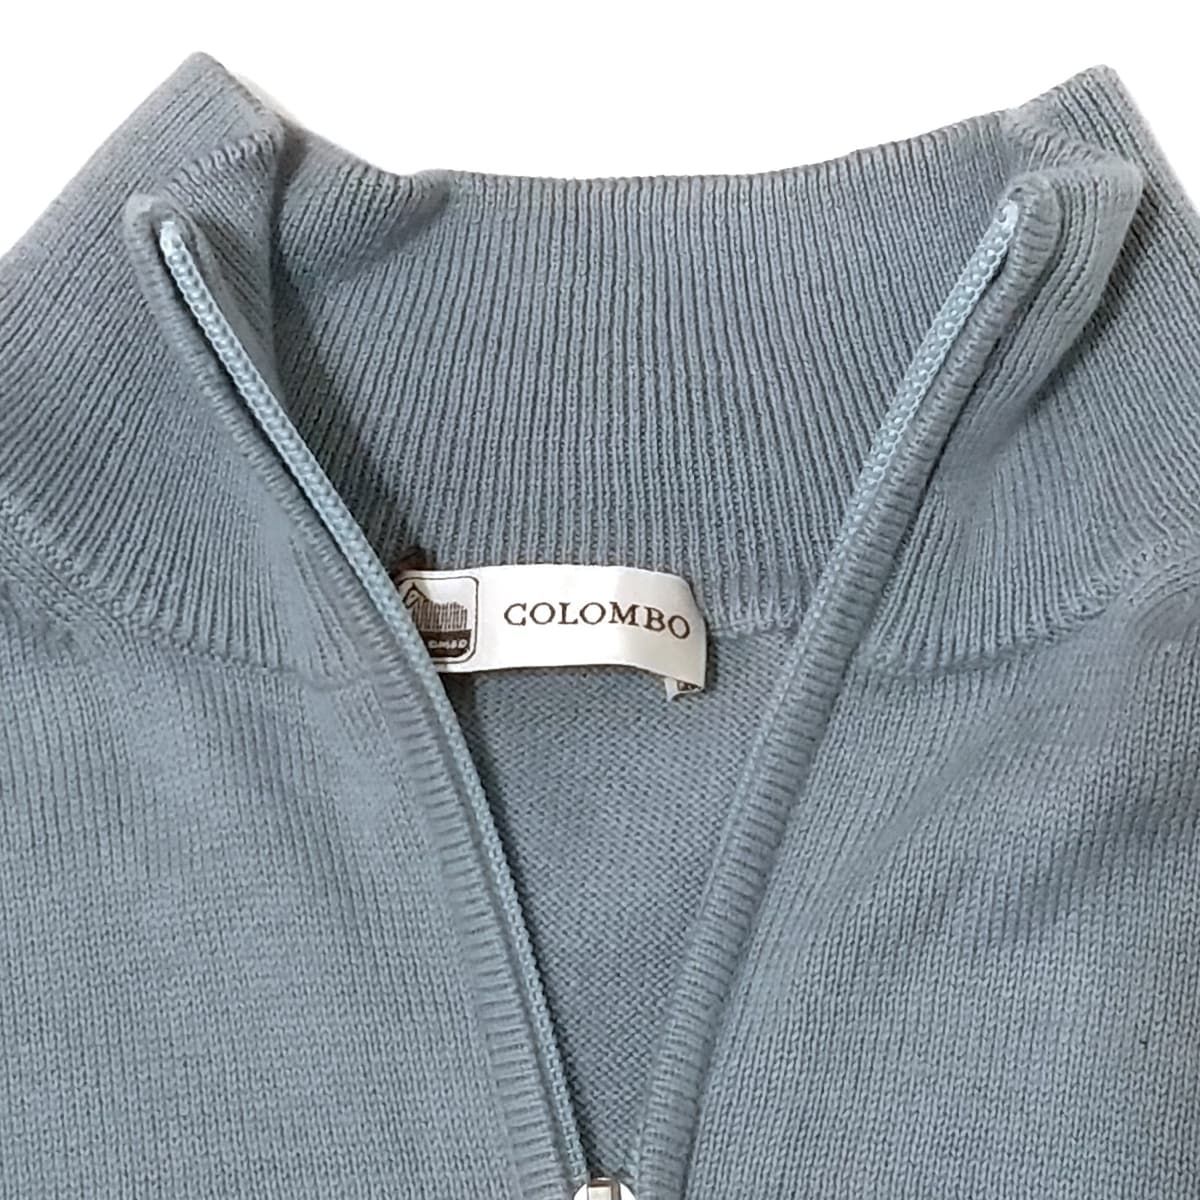 COLOMBO(コロンボ) 長袖セーター サイズ52 メンズ美品 - ライトブルー ハイネック/ジップアップ 綿 - メルカリ